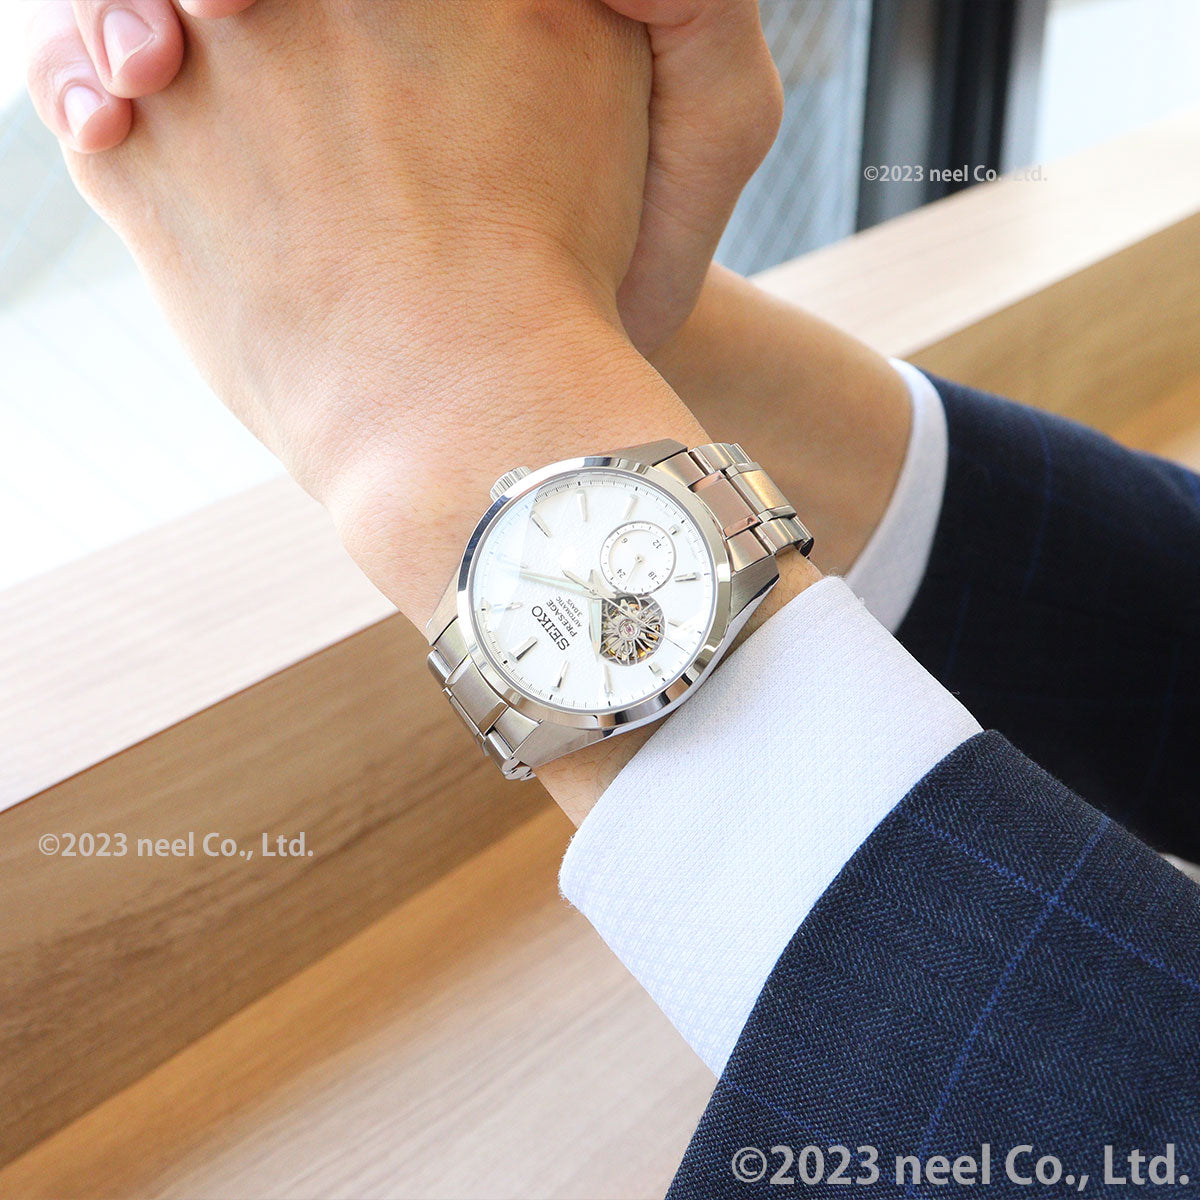 セイコー プレザージュ SEIKO PRESAGE 自動巻き コアショップ専用 流通限定 腕時計 メンズ プレステージライン SARJ001  Sharp Edged Series オープンハート【2023 新作】